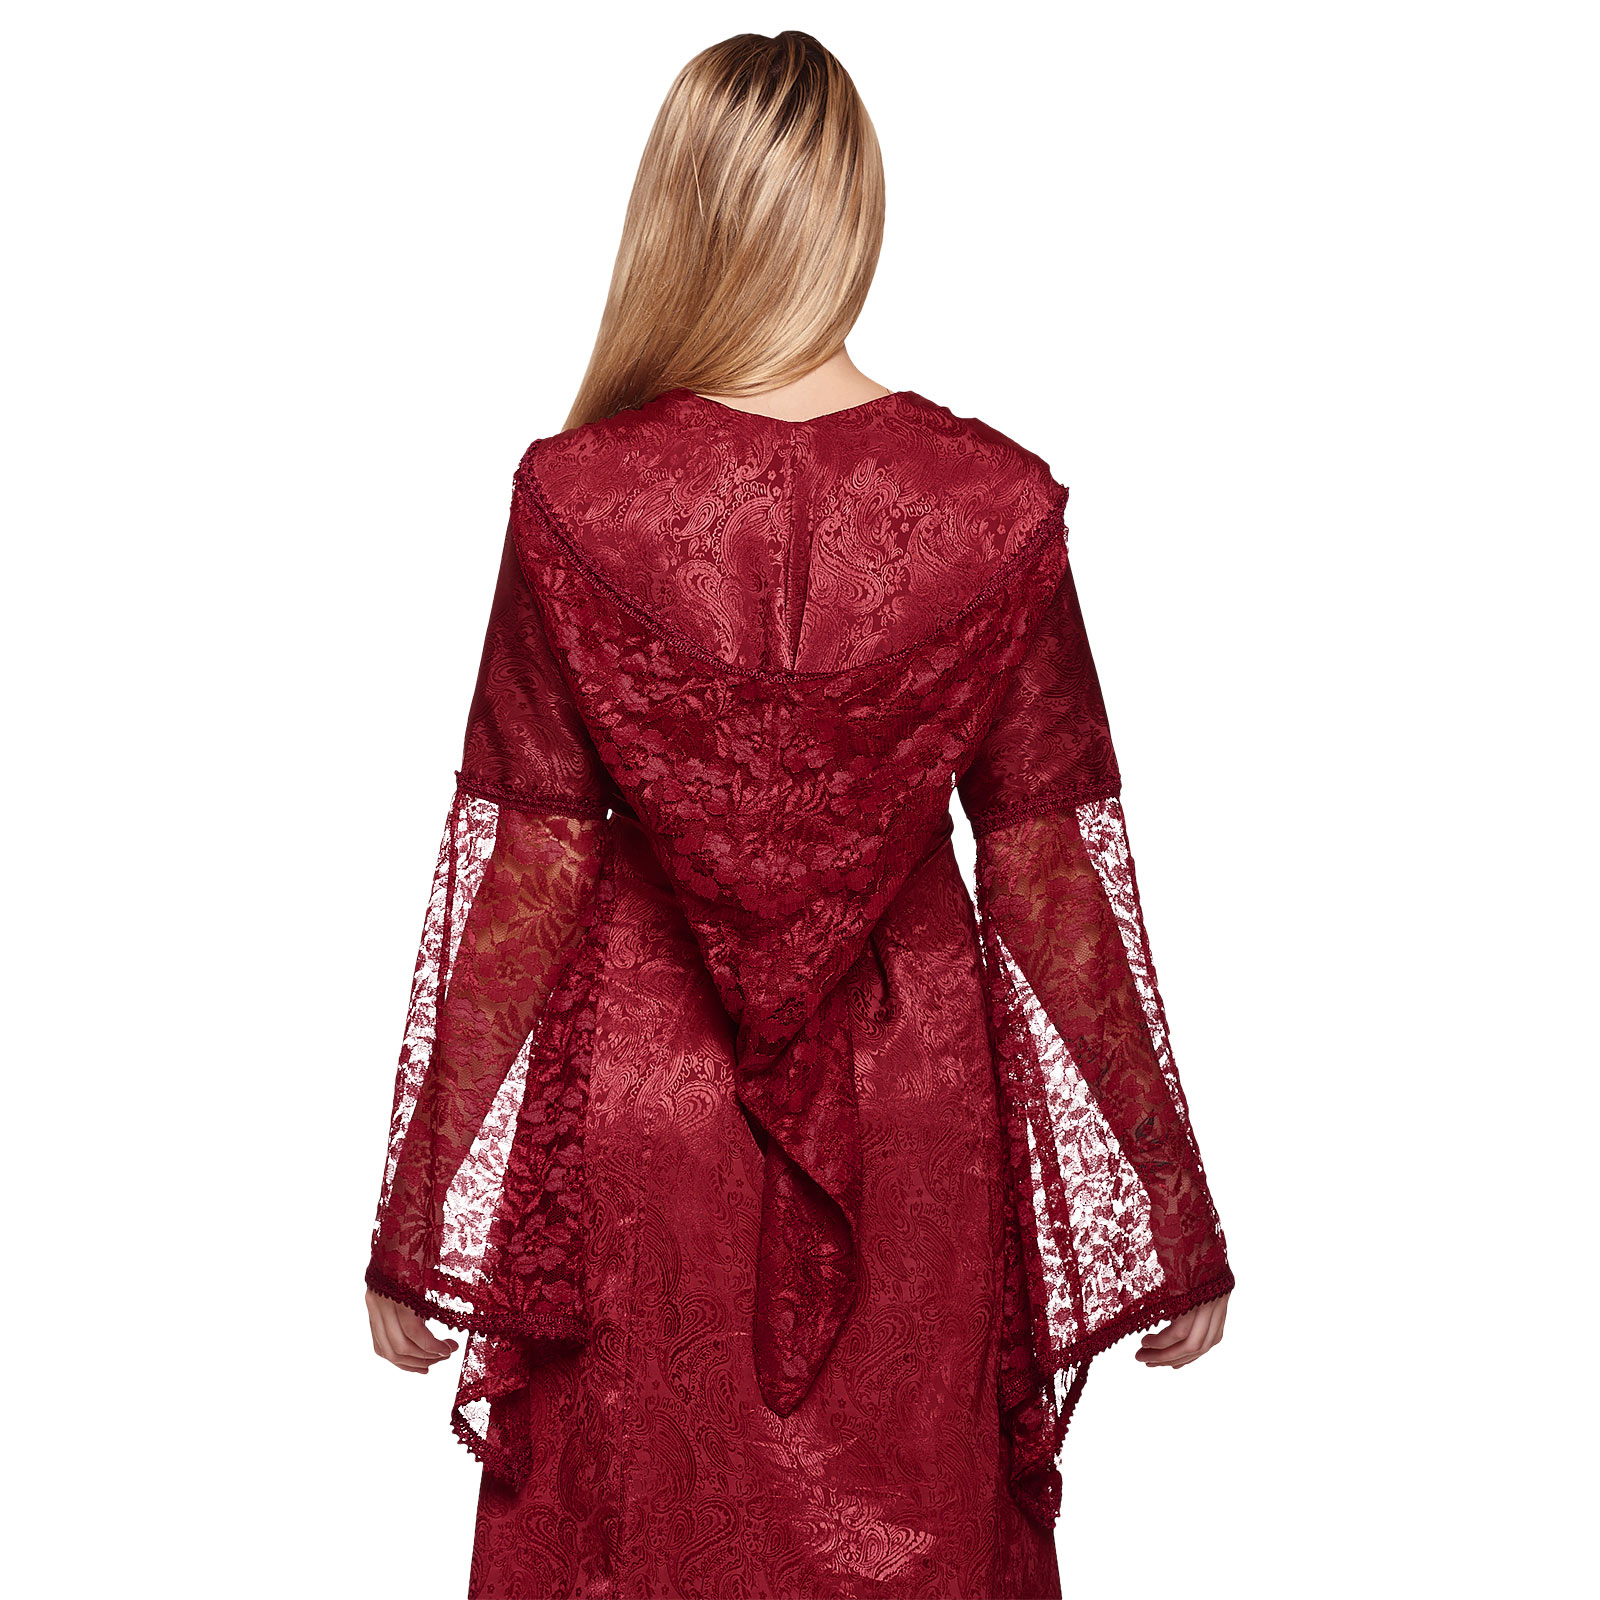 Marianna Mittelalter Kleid rot